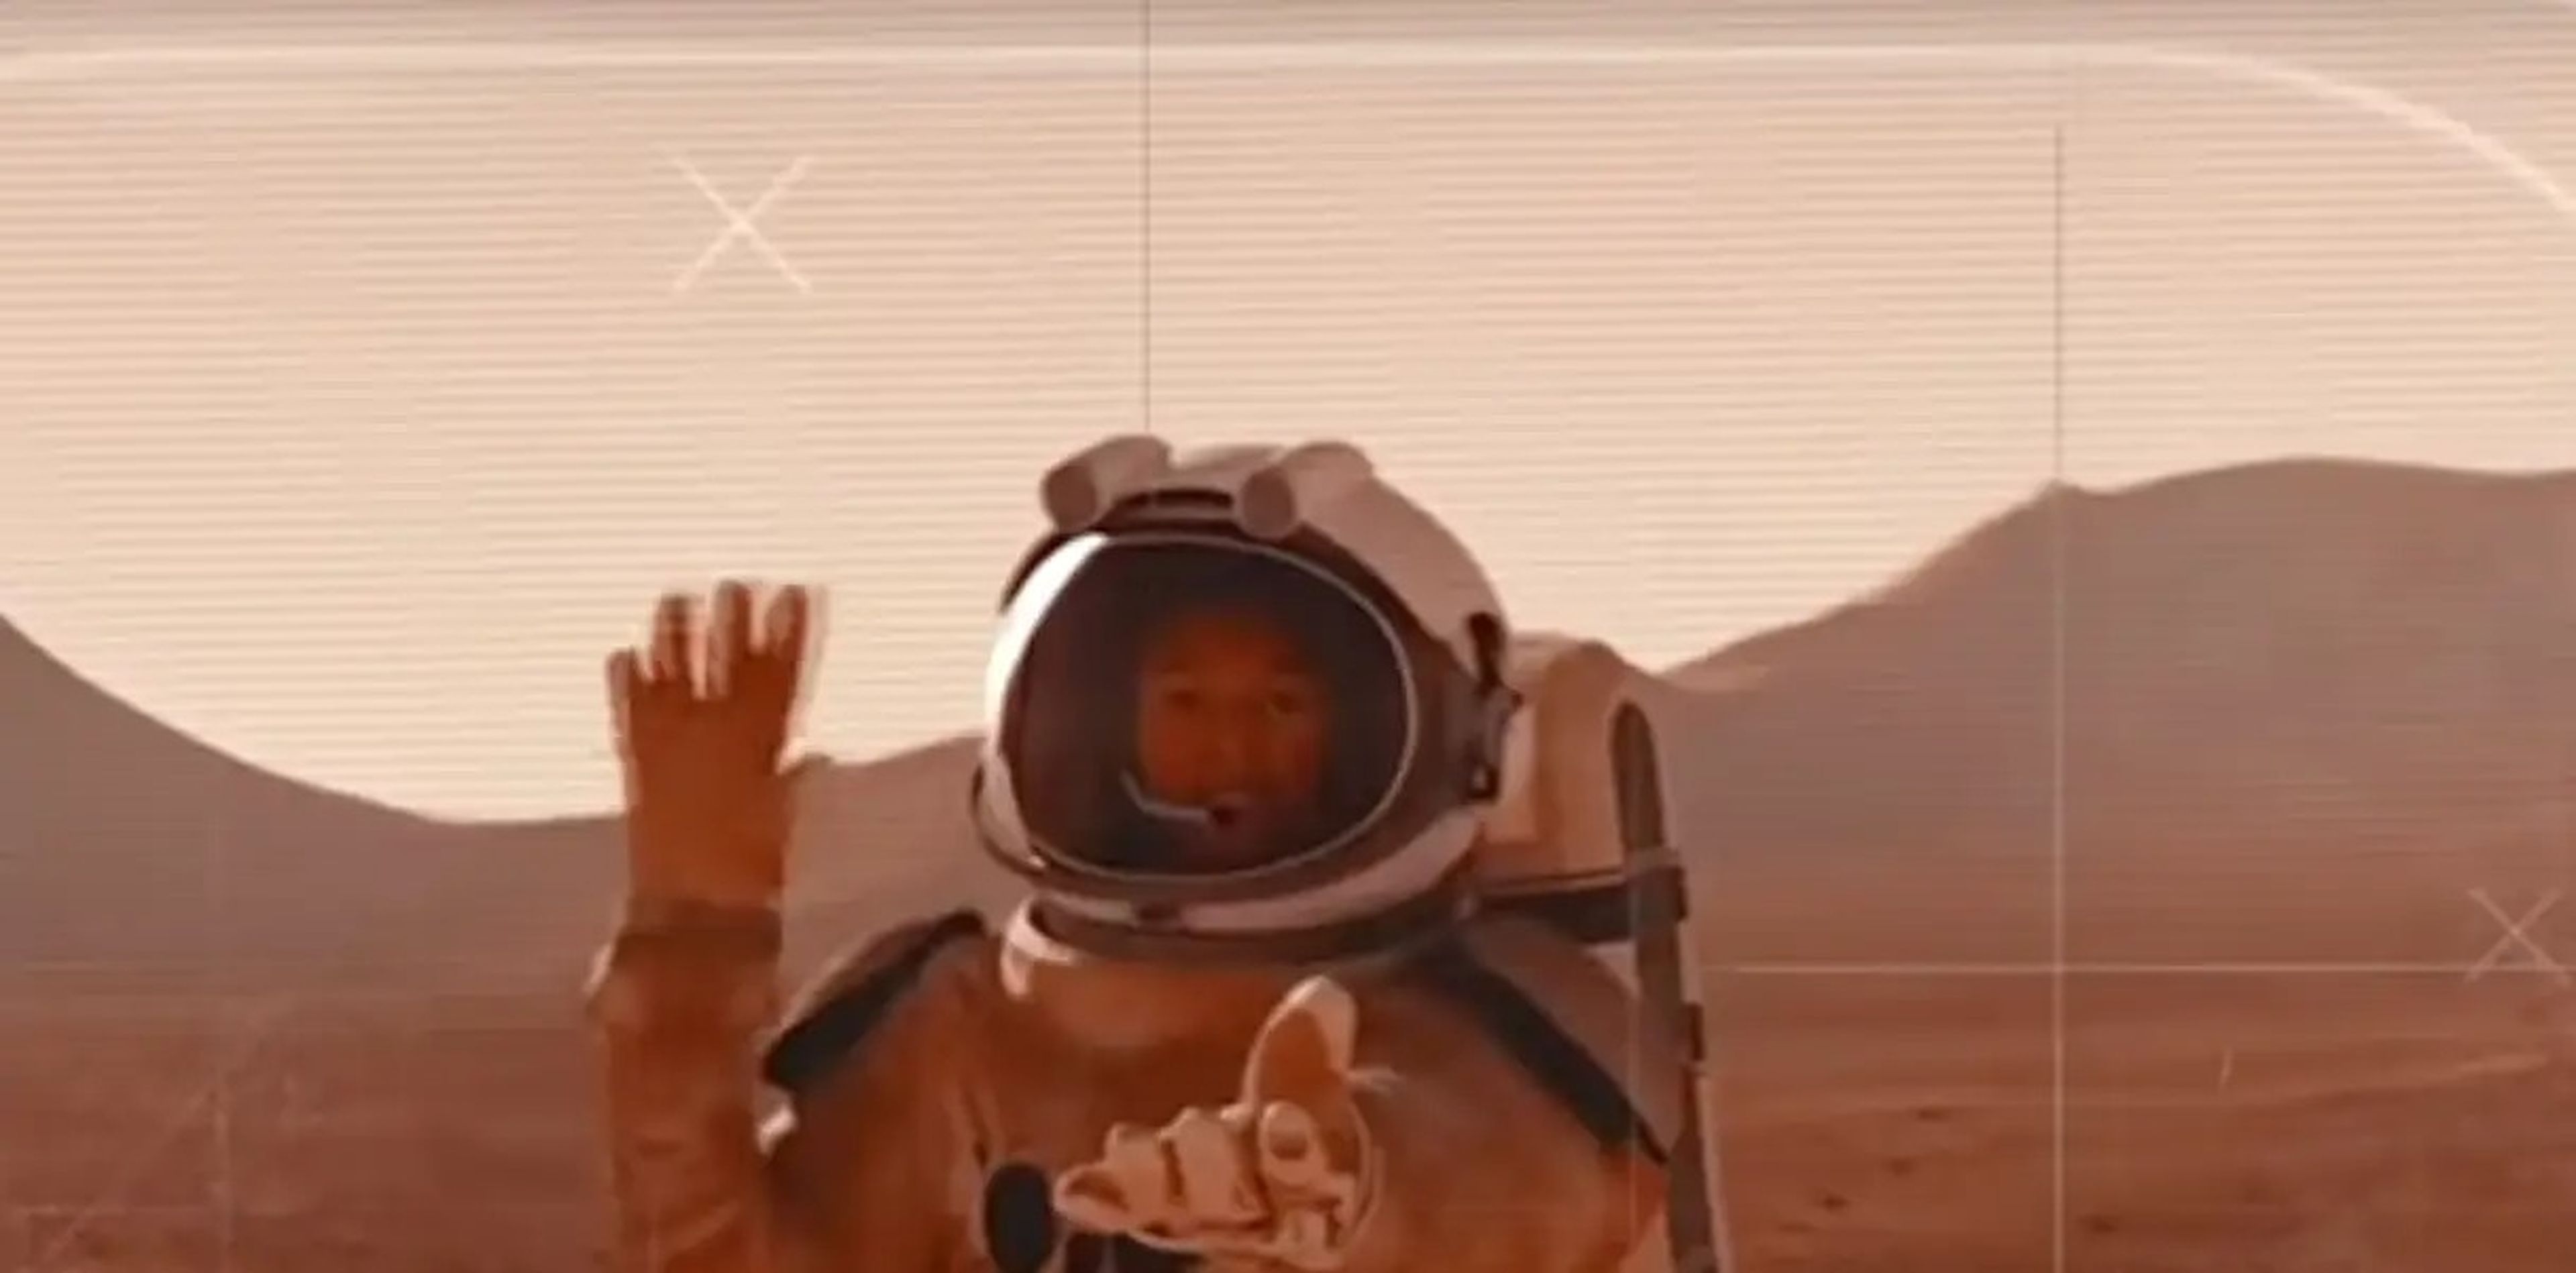 صورة لرائد فضاء يبث من المريخ.